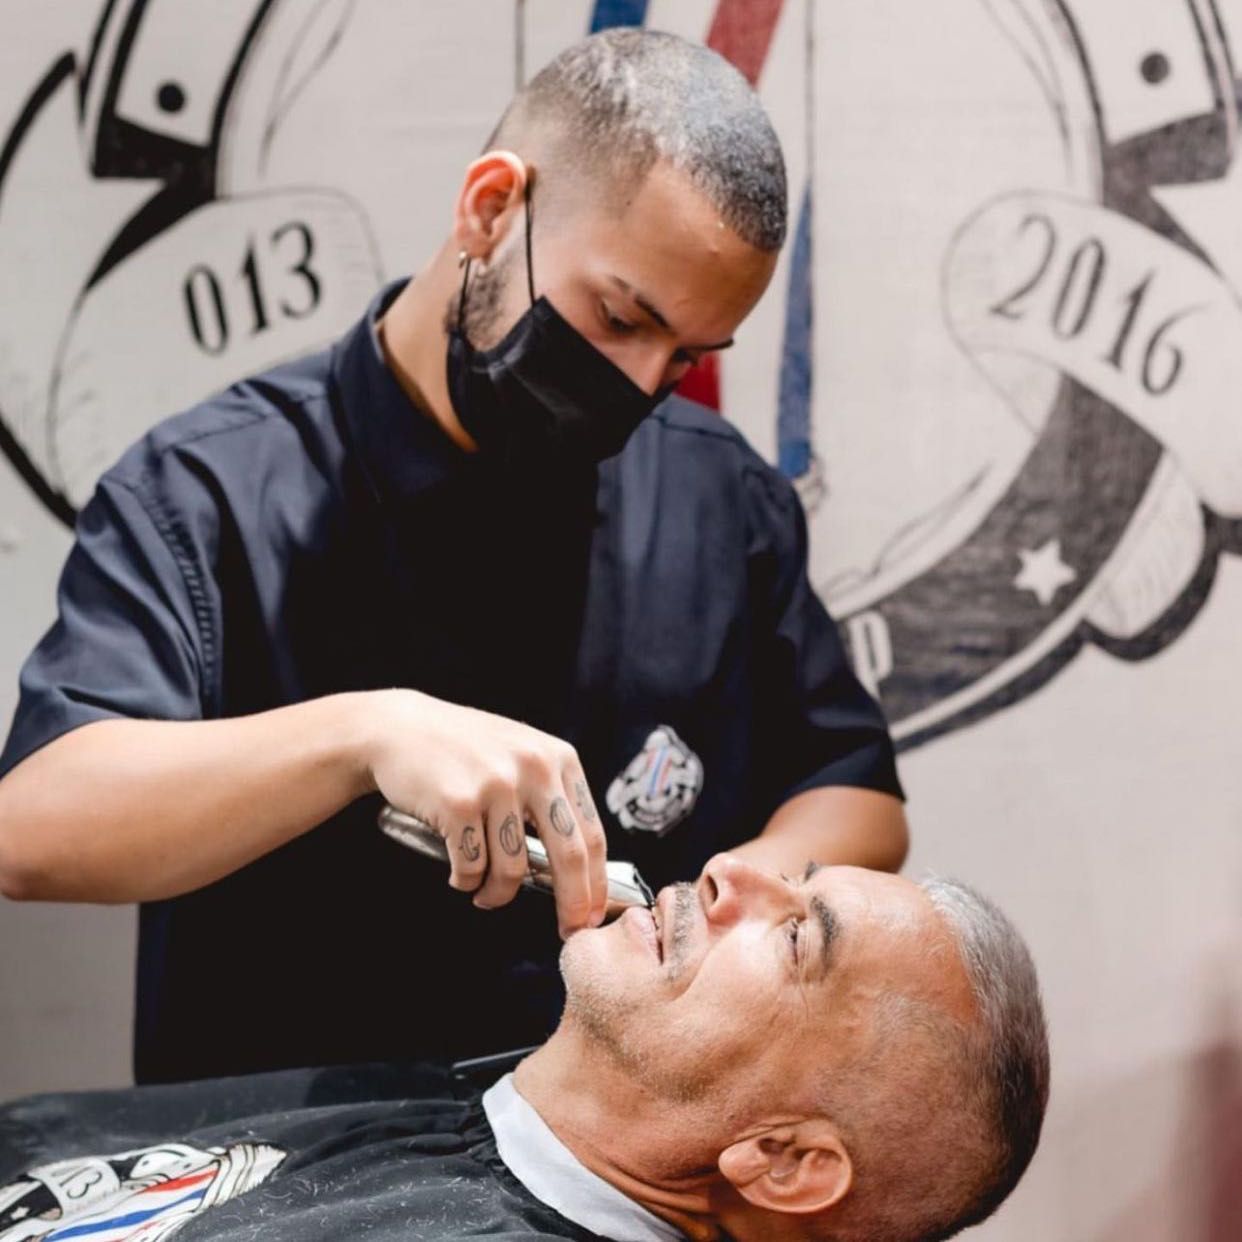 João Pimentel - 013 Barber Shop